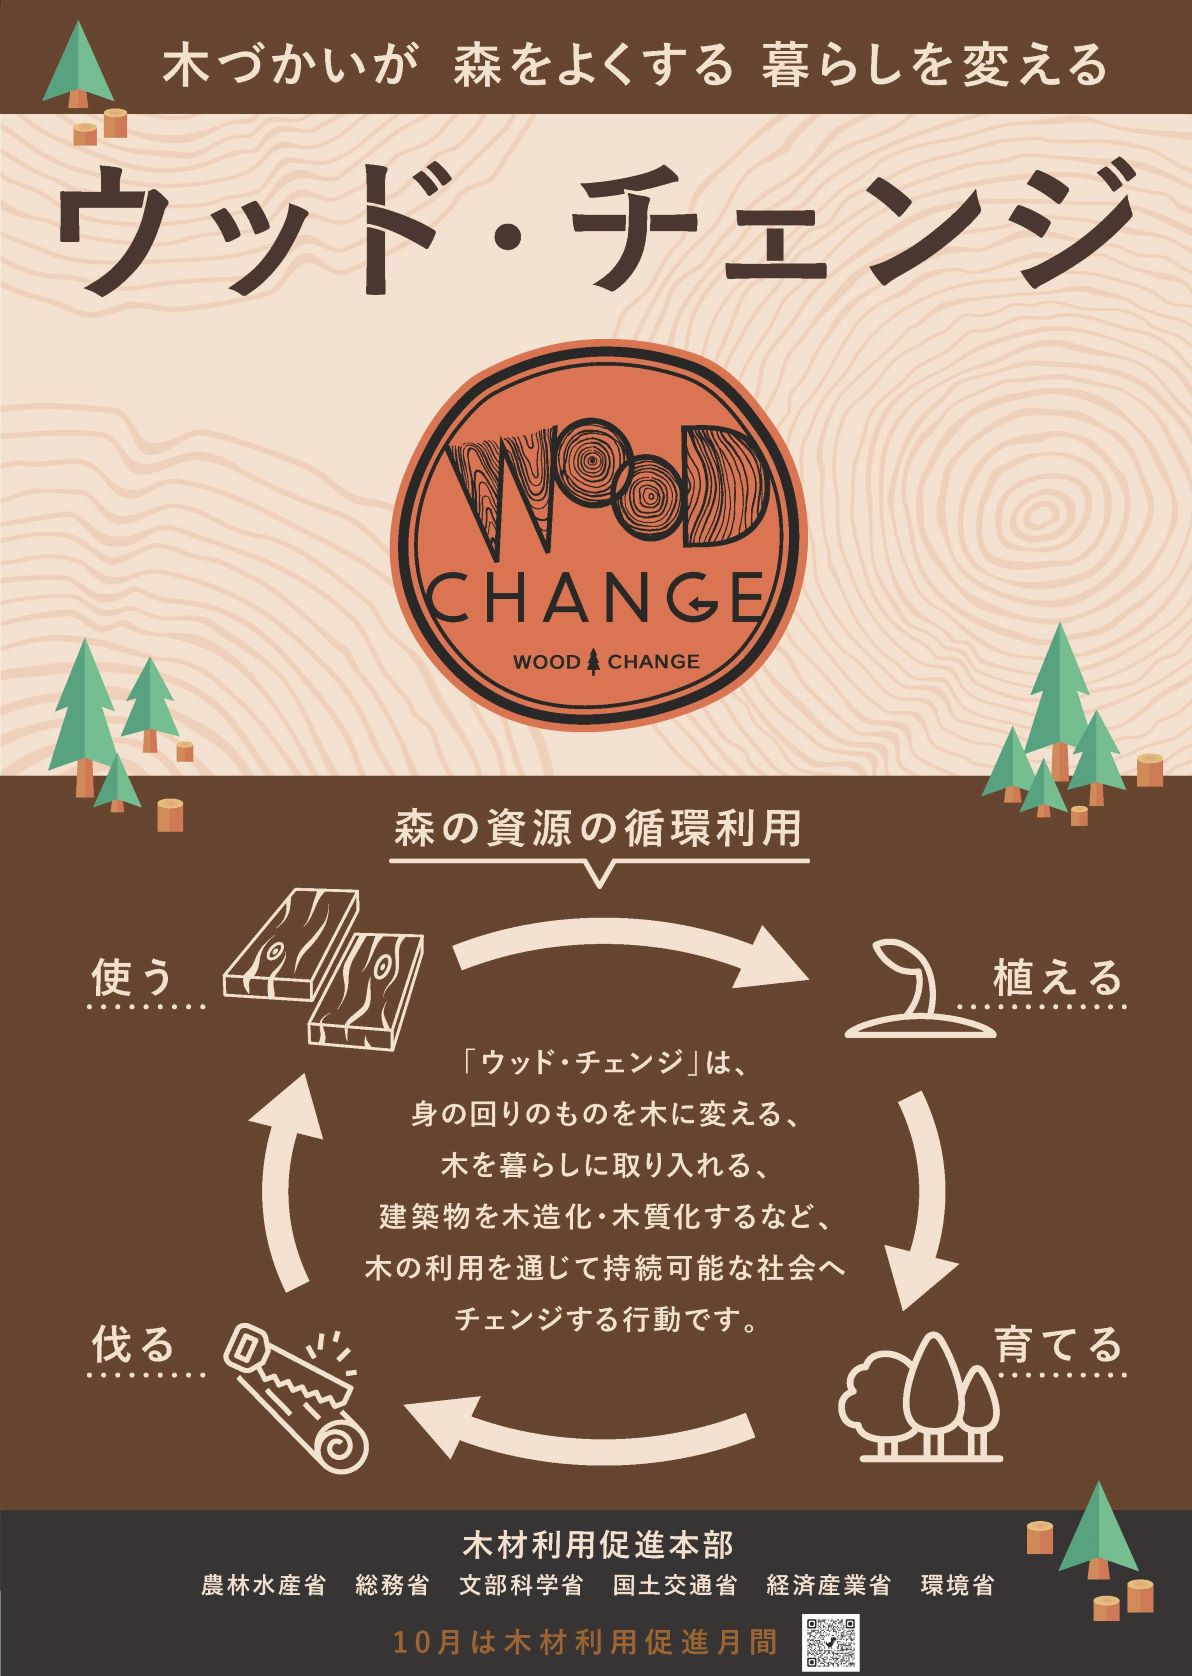 10月は「木材利用促進月間」です～ウッド・チェンジ　木づかいが森をよくする暮らしを変える～